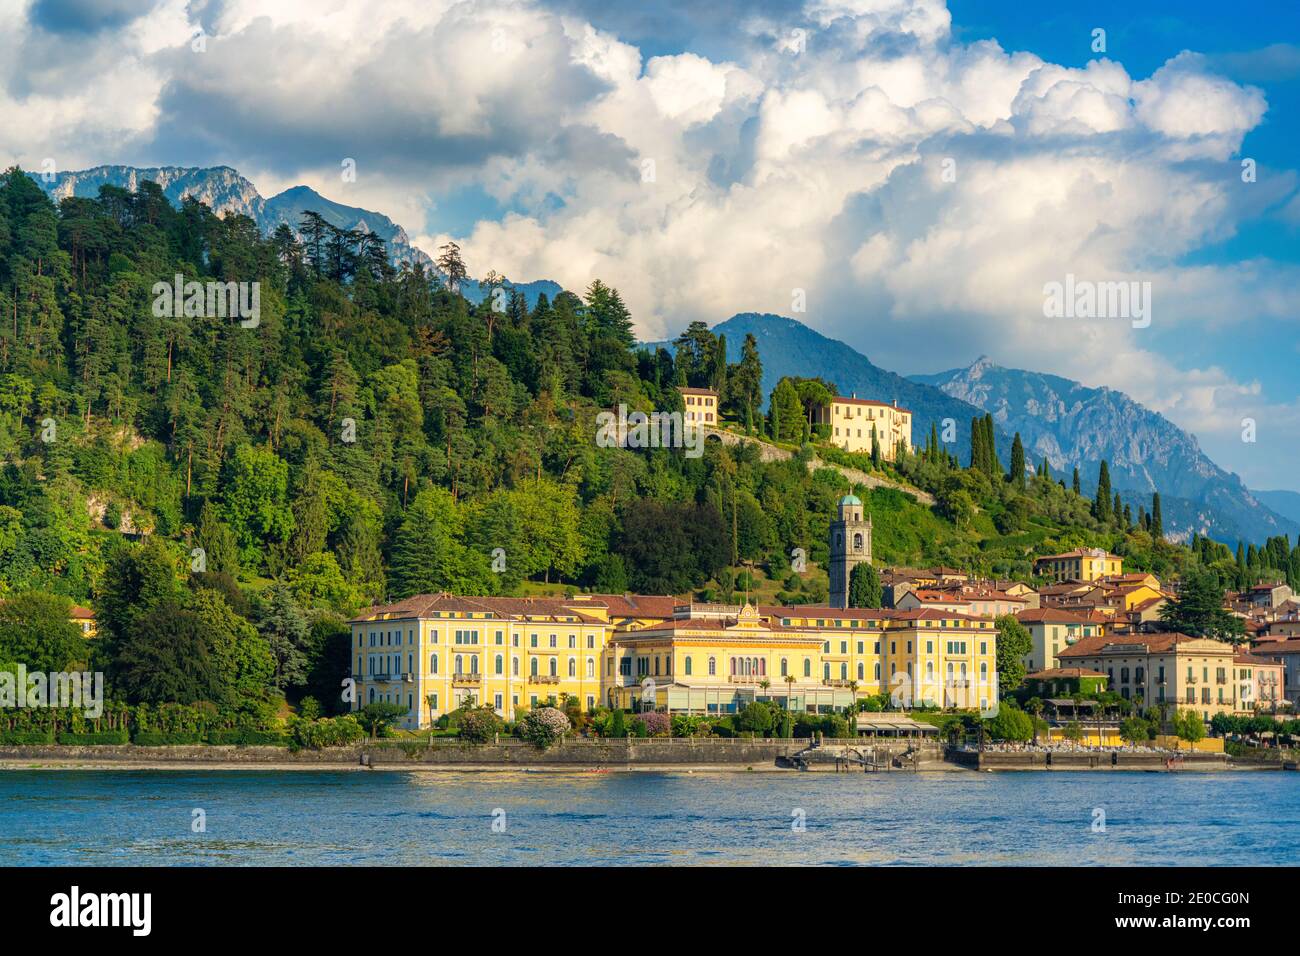 Historische Gebäude und Hotels in der Altstadt von Bellagio von der Fähre gesehen, Comer See, Como Provinz, Lombardei, Italienische Seen, Italien, Europa Stockfoto